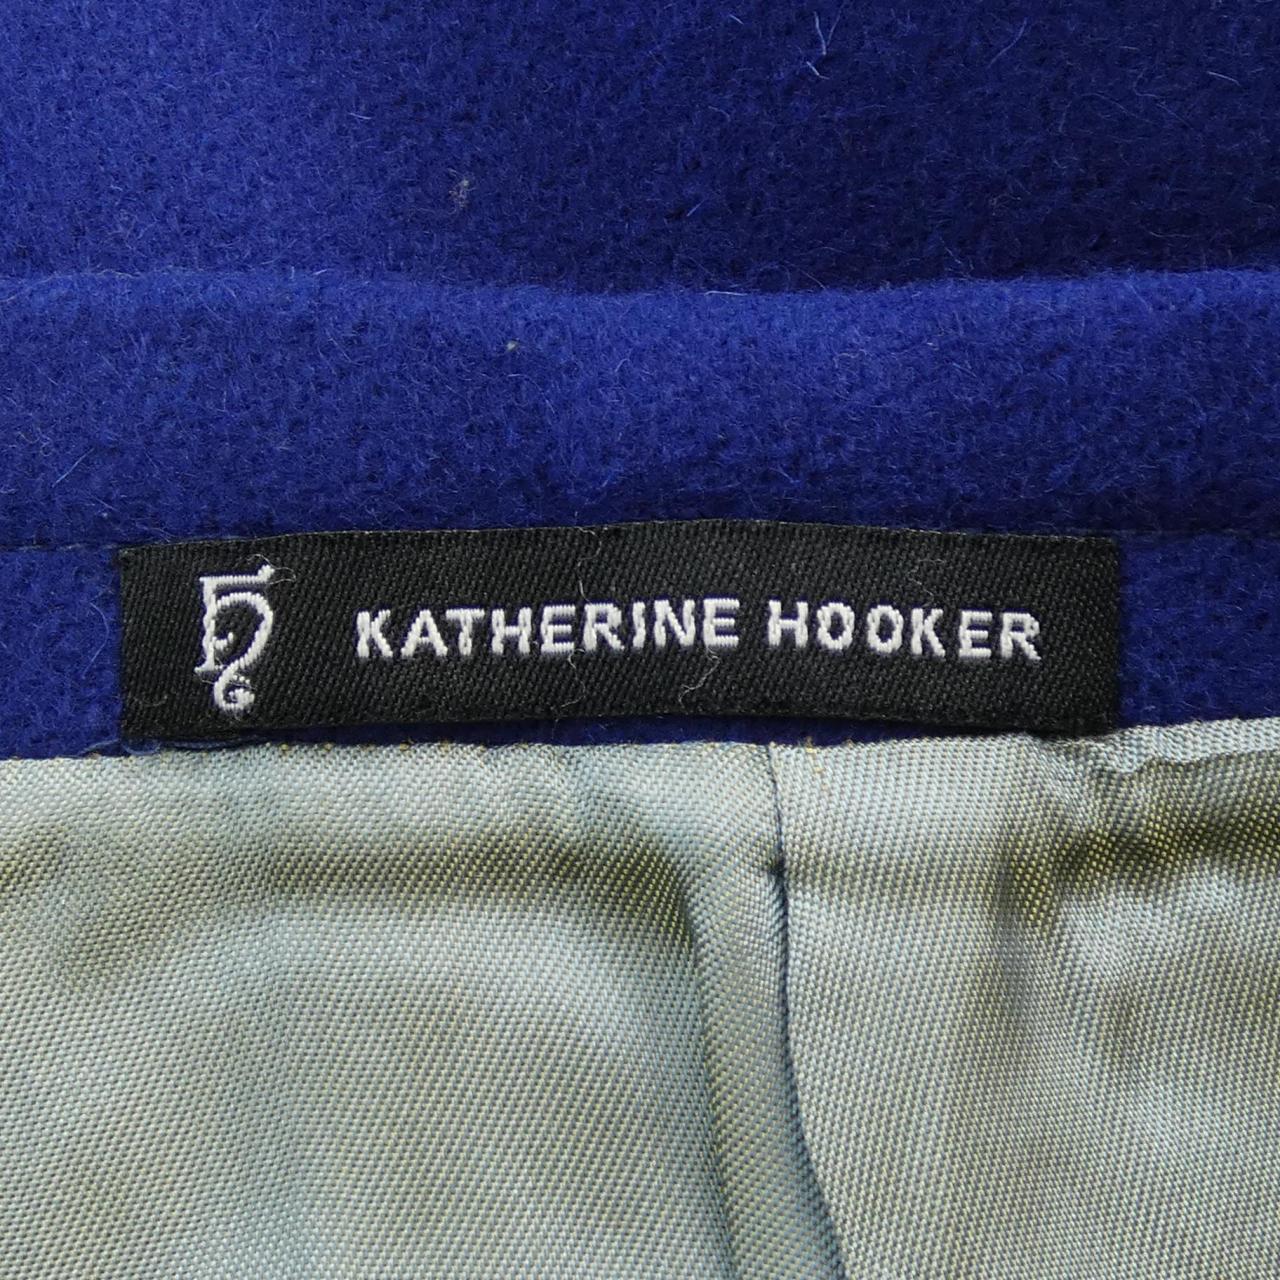 ご注意くださいKATHERINE HOOKER スカート